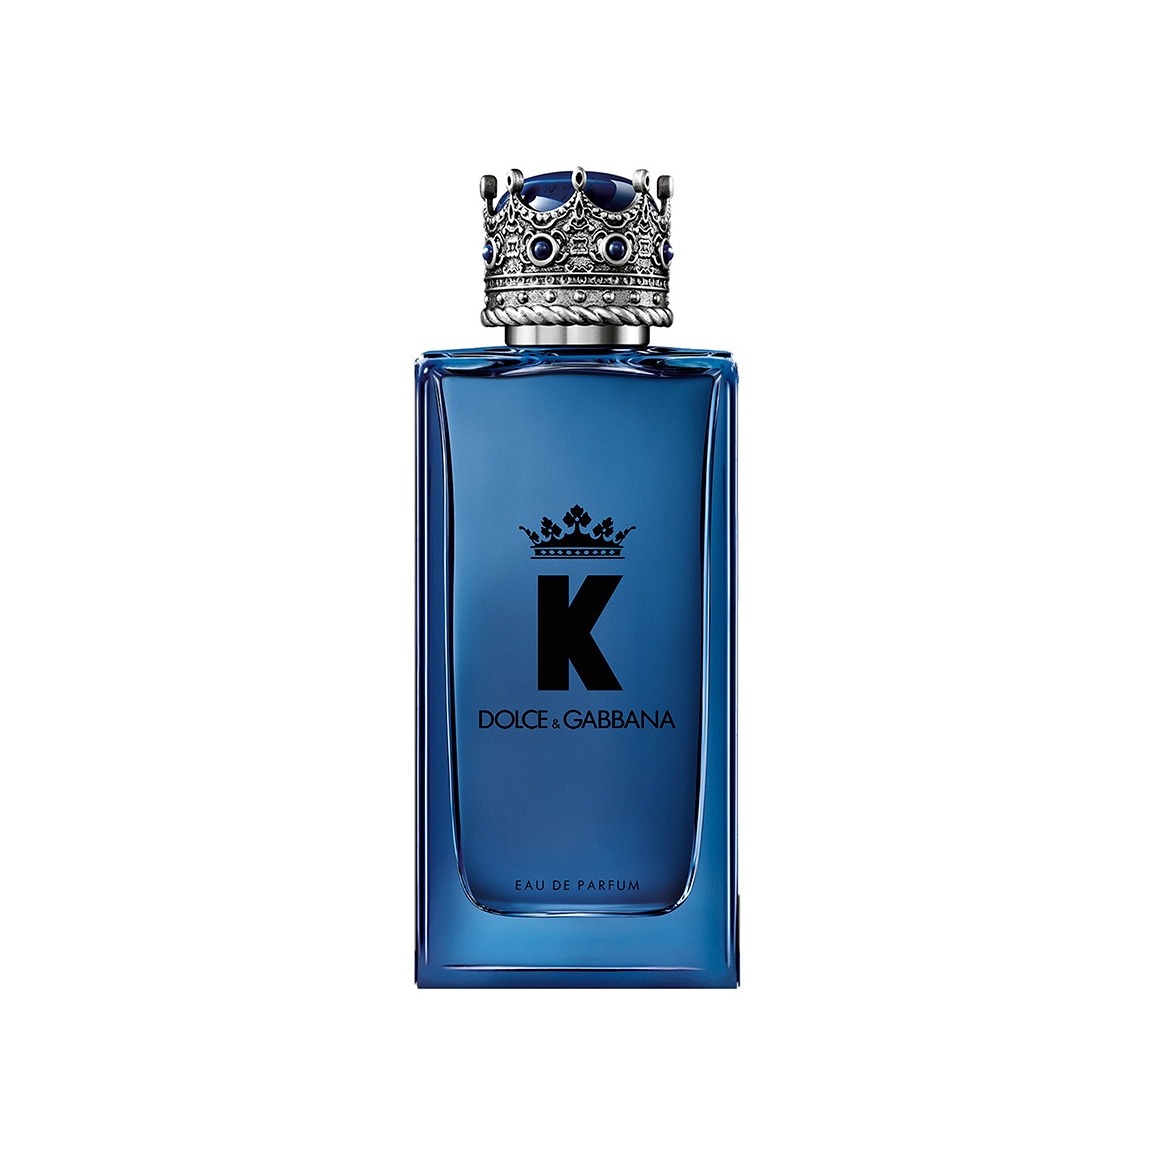 K by Dolce&Gabbana Парфюмерная вода  магазин VISAGEHALL являющийся официальным дистрибьютором в России 